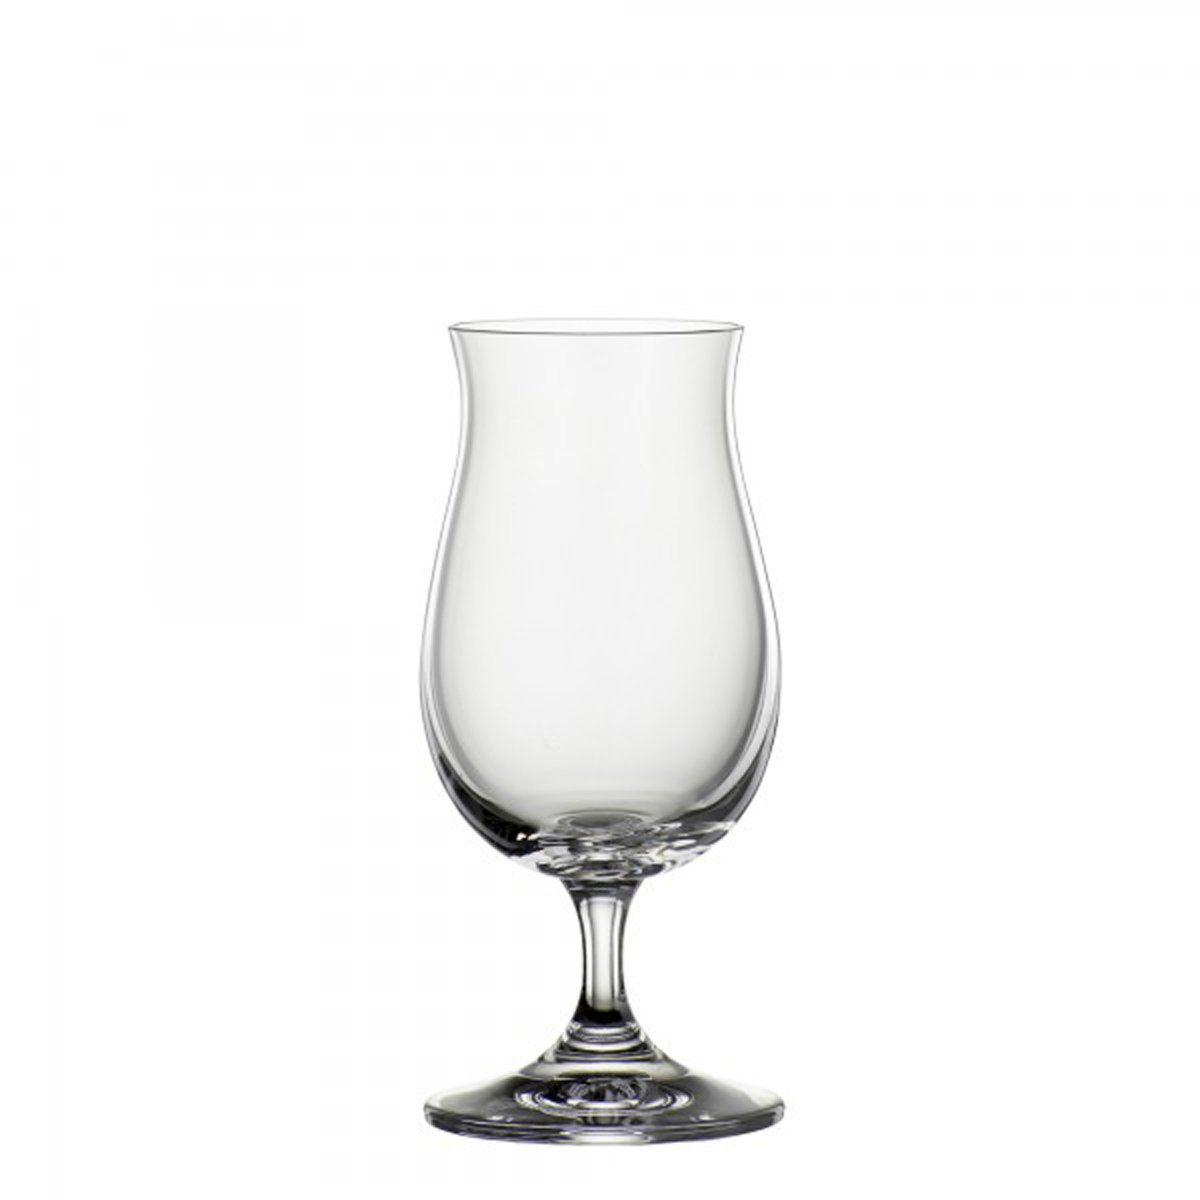 BOHEMIA SELECTION Whiskyglas, Glas